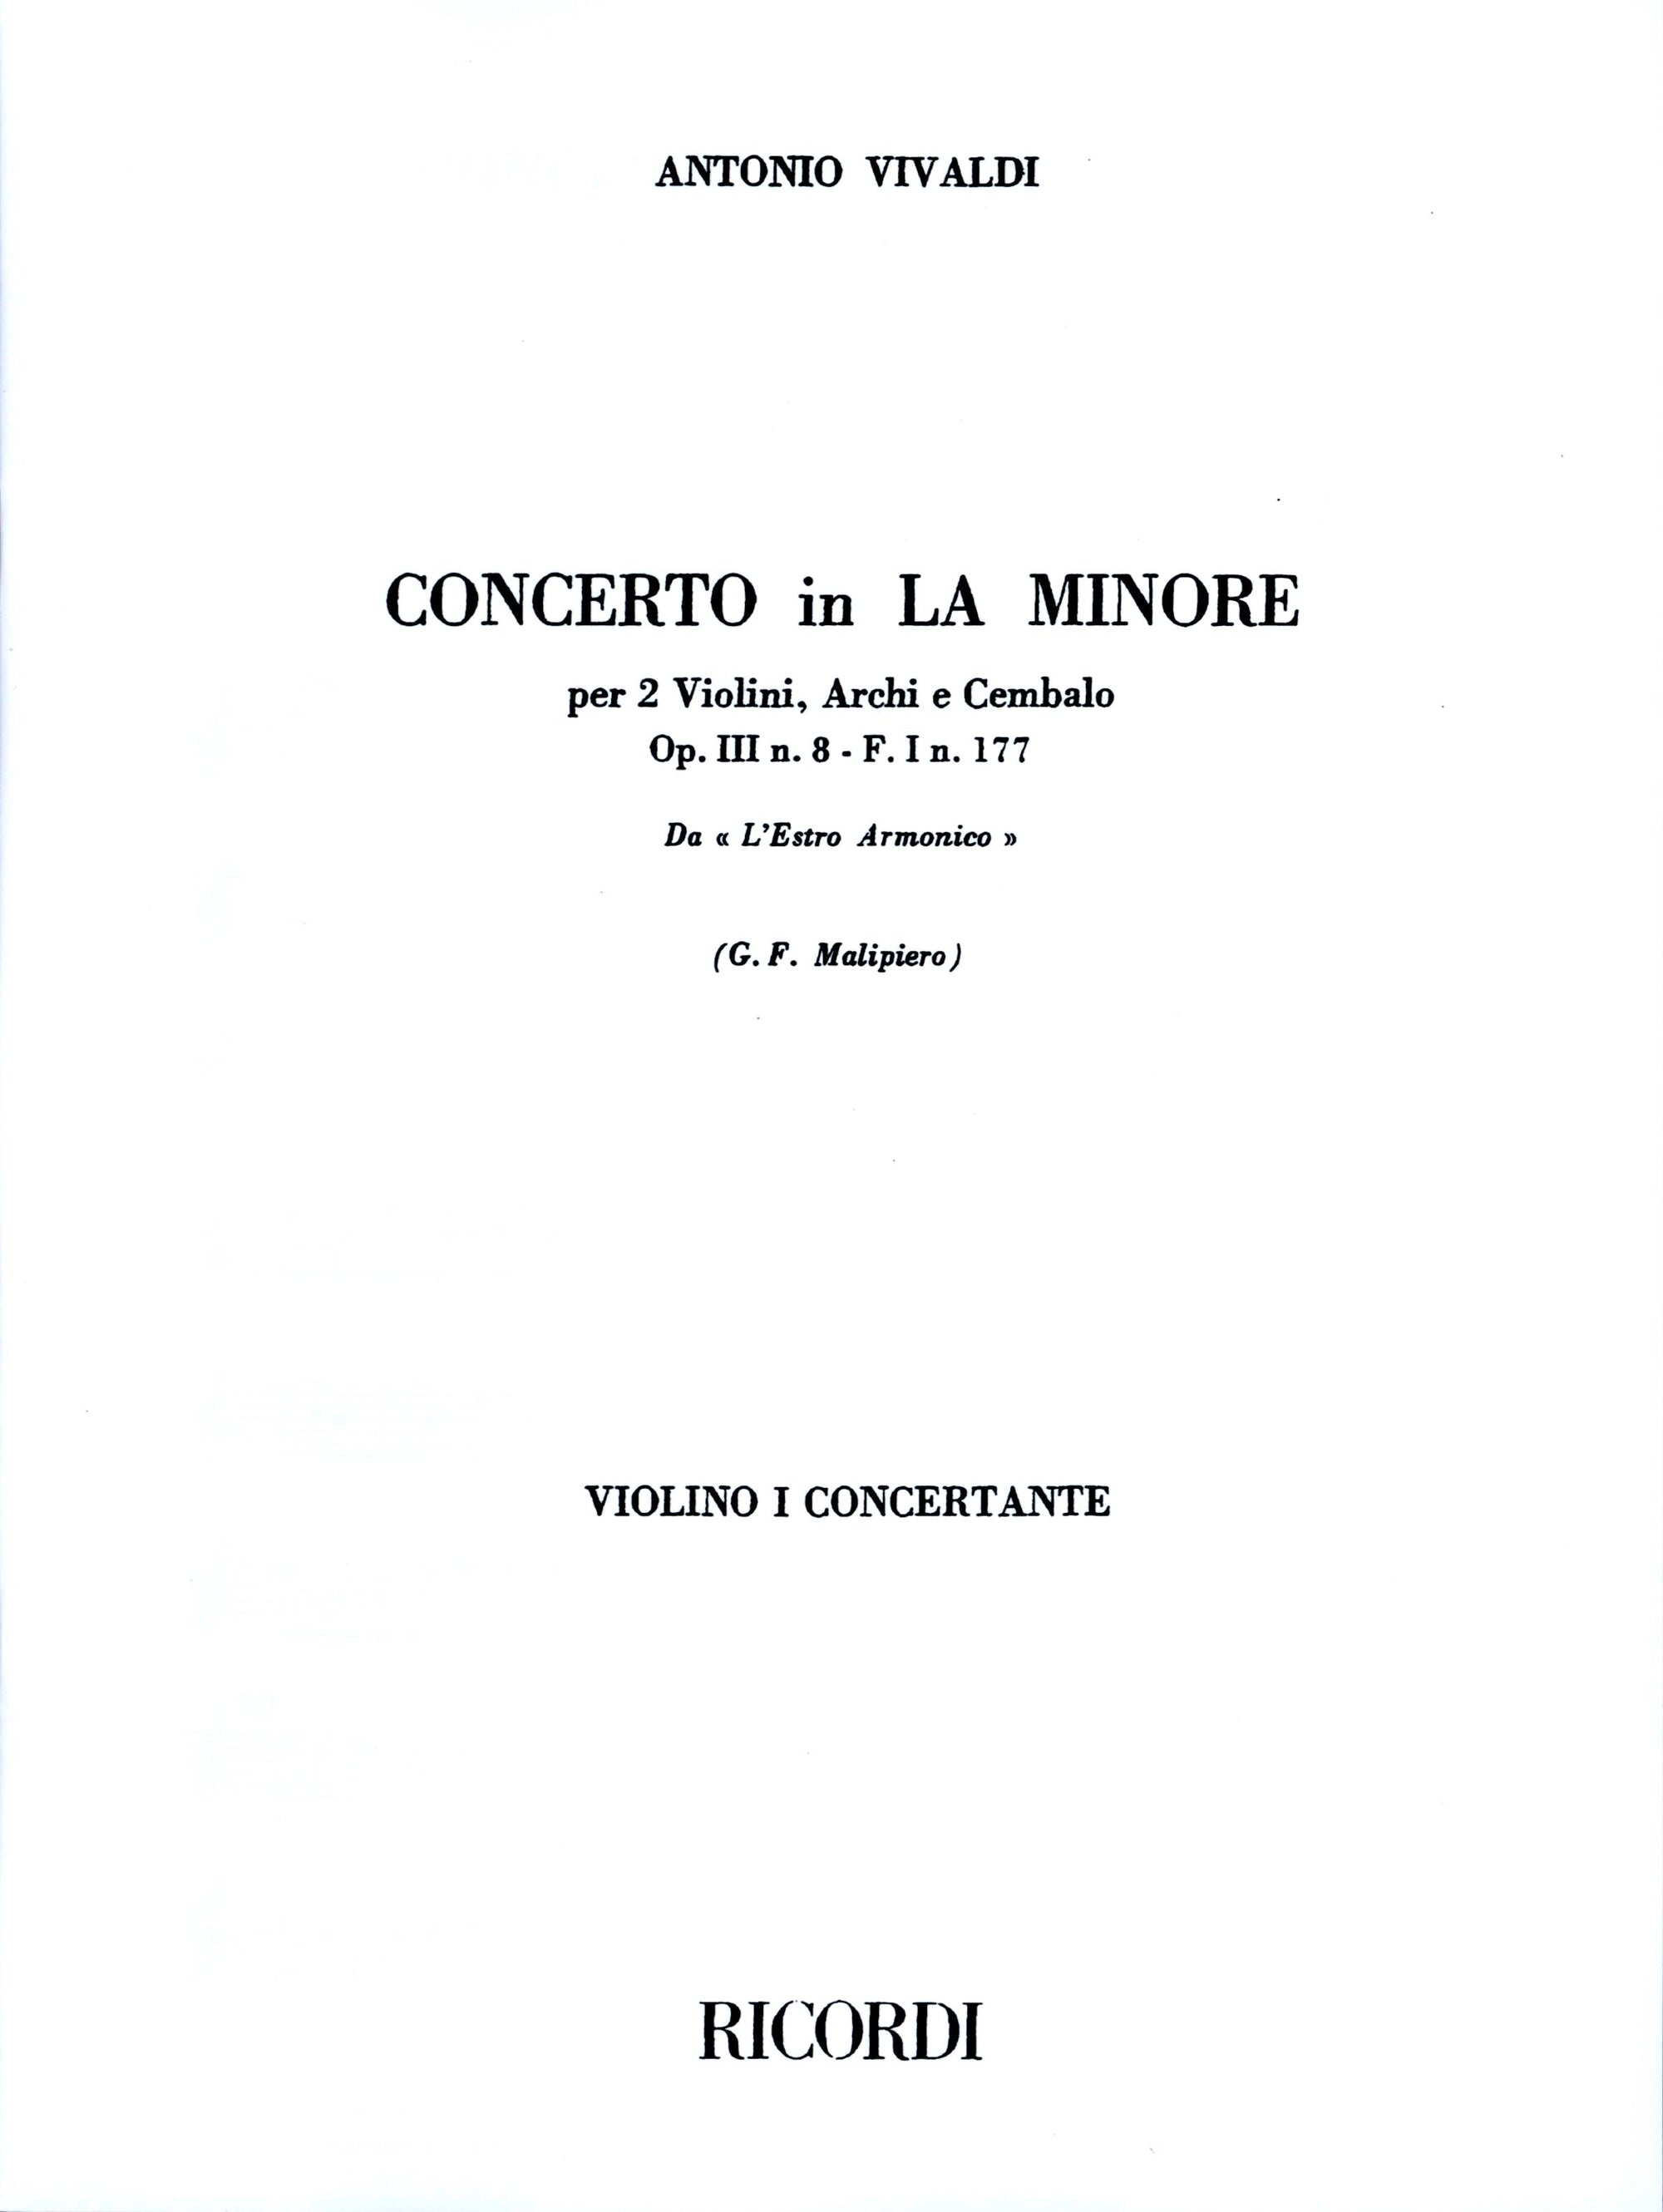 Vivaldi: Concerto for 2 VIolins in A Minor, RV 522, Op. 3, No. 8